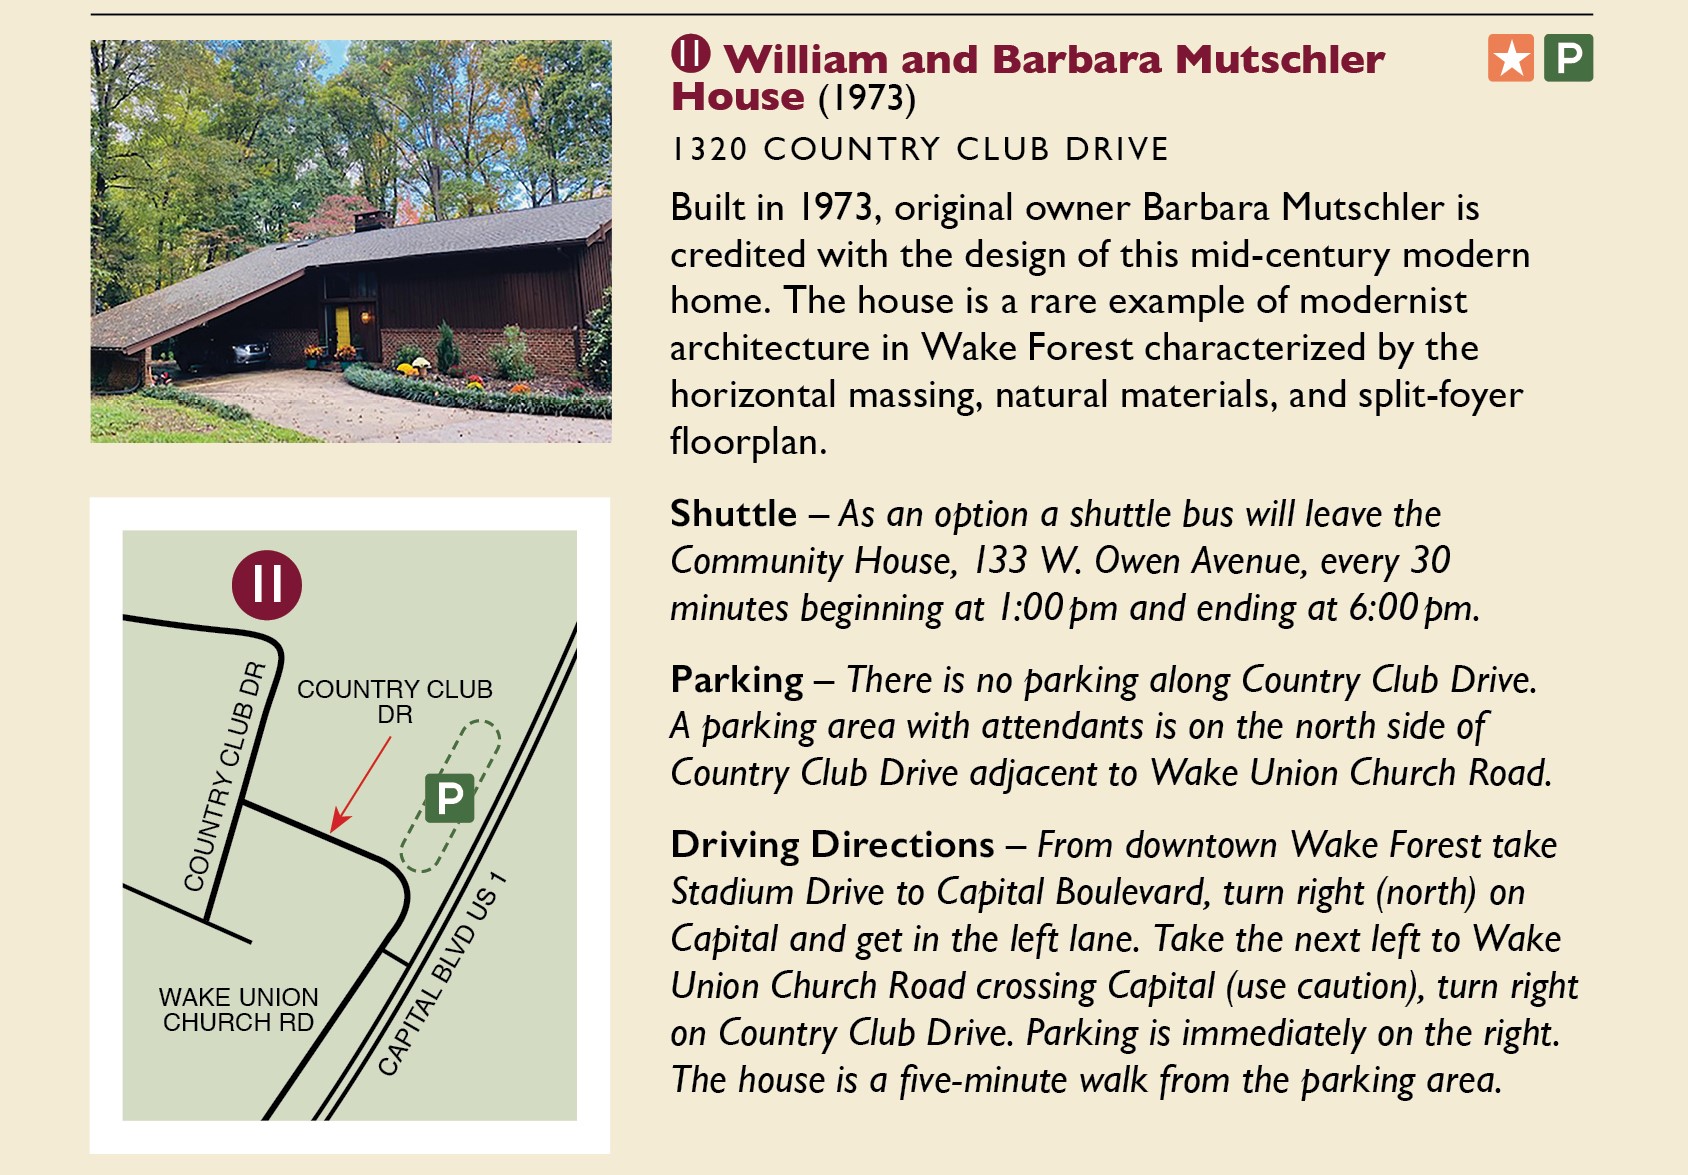 Mutschler House Information